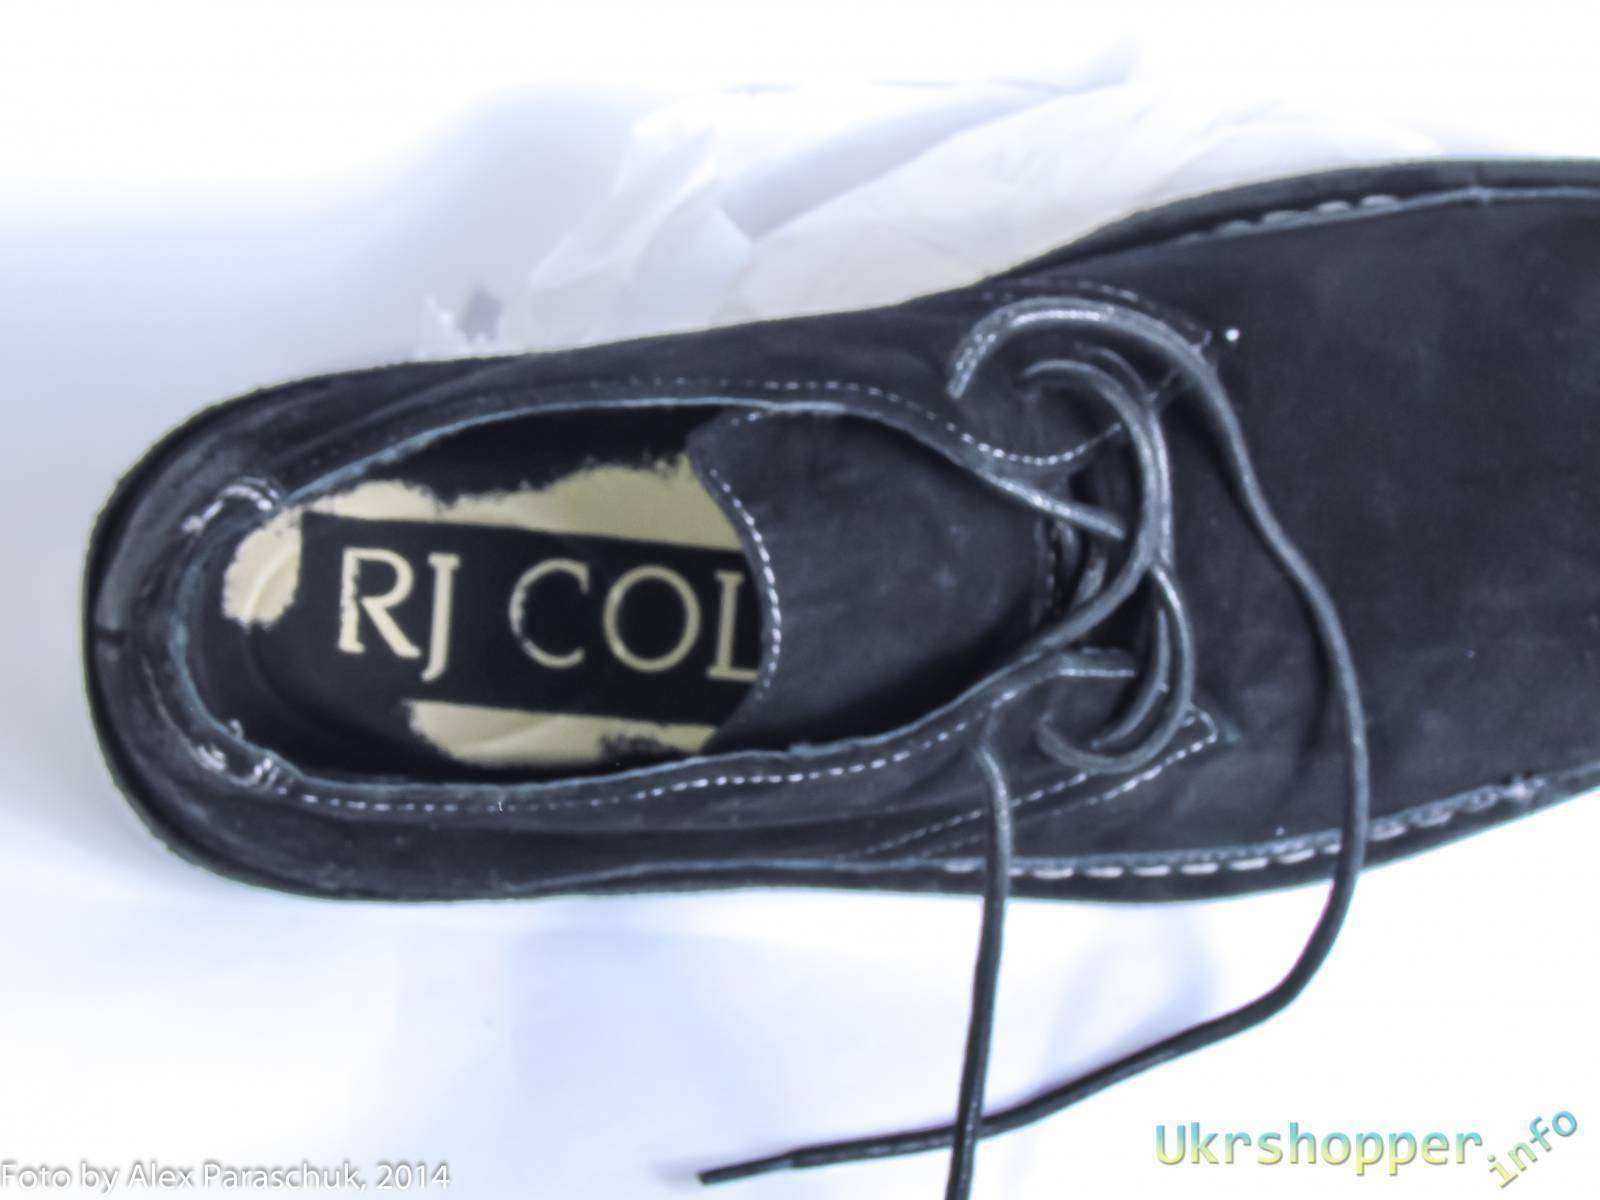 Замшевые туфли с распродажи 6pm - RJ Colt Oscar